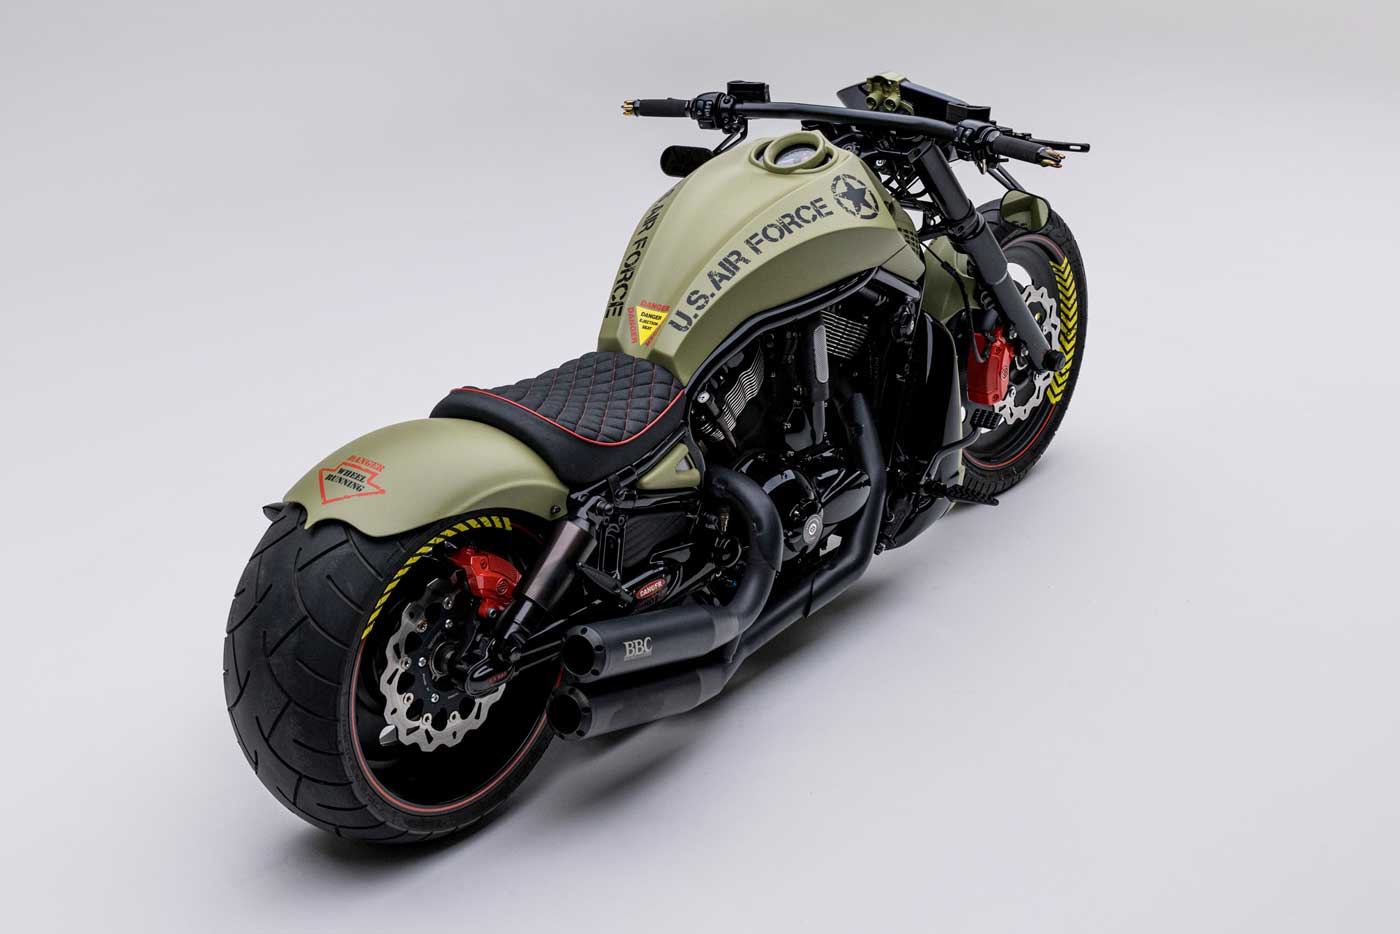 Harley Davidson V-Rod Custom Bike